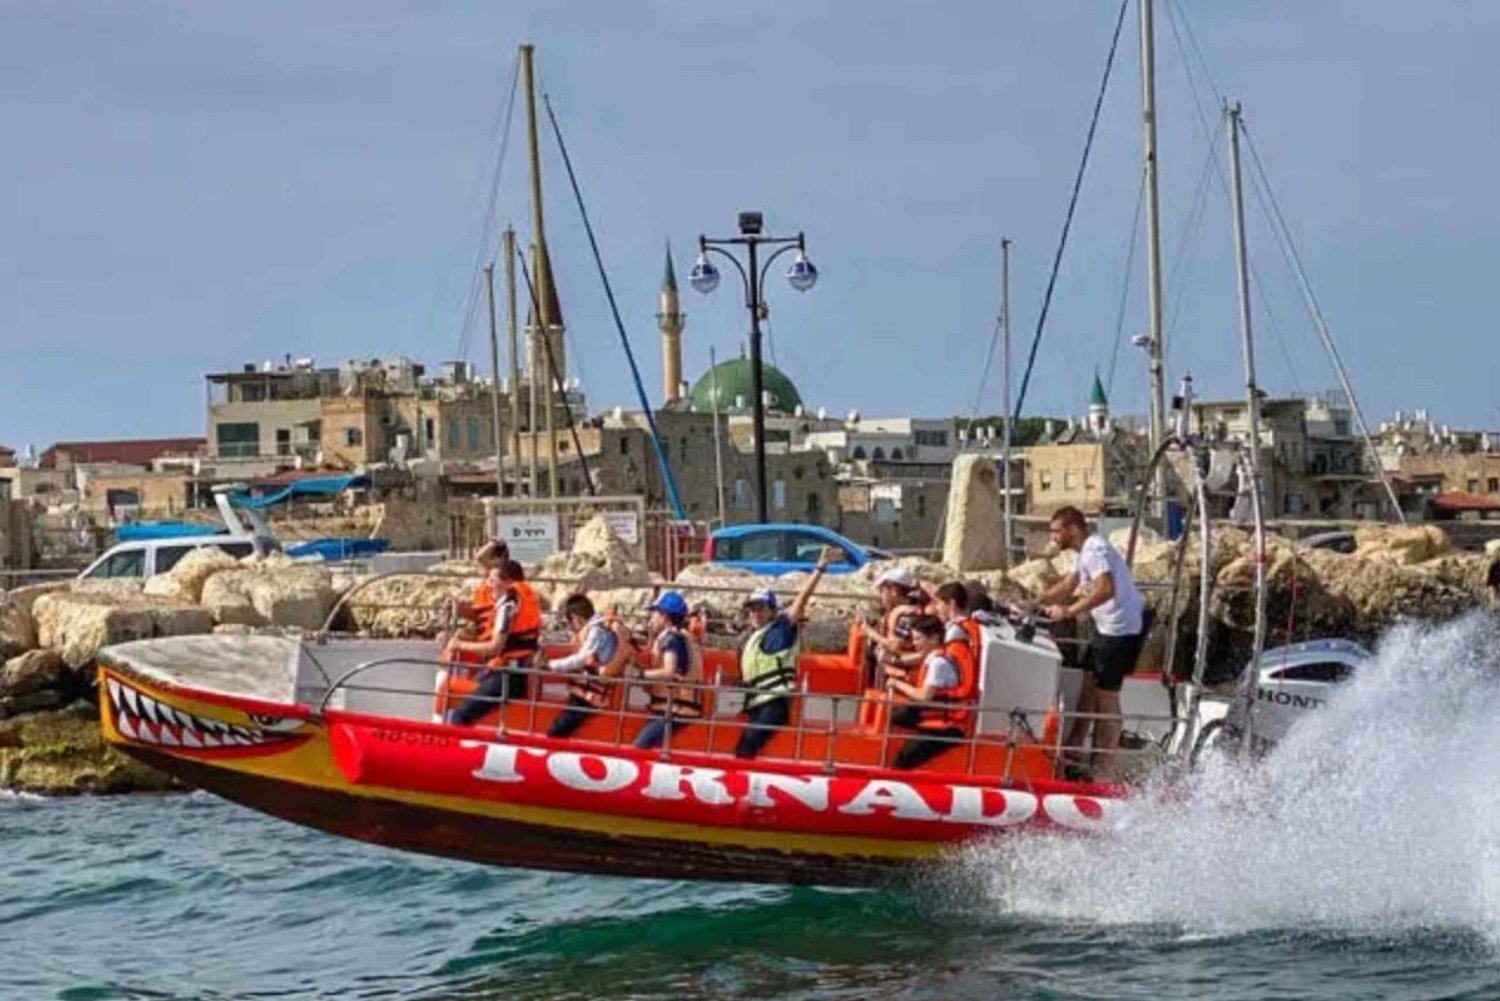 Tel Aviv: Paseo en barco de alta velocidad Tornado desde Jaffa